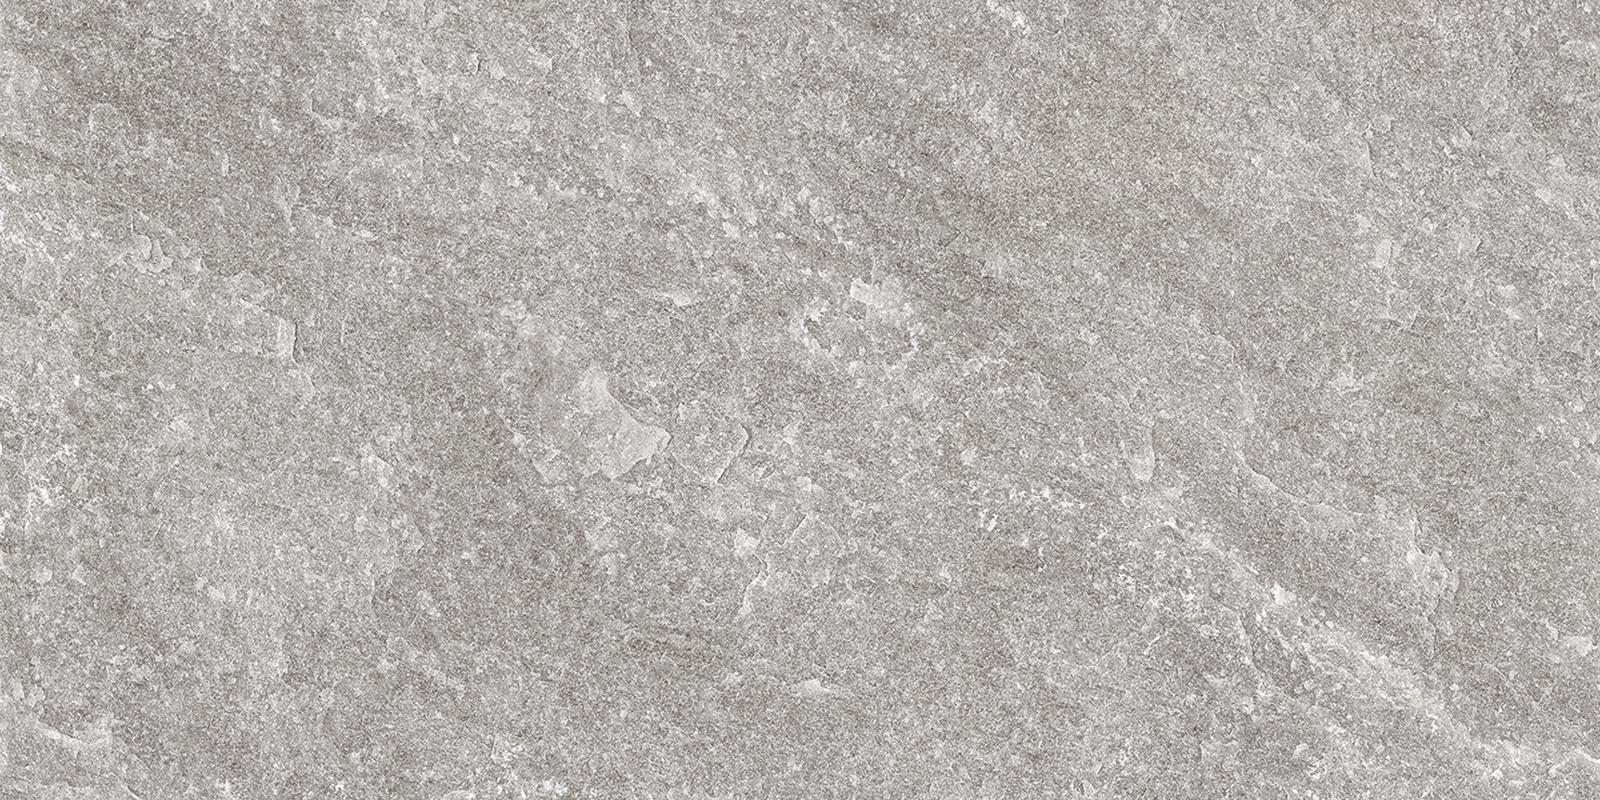 Ergon Oros Stone Grey 60x120